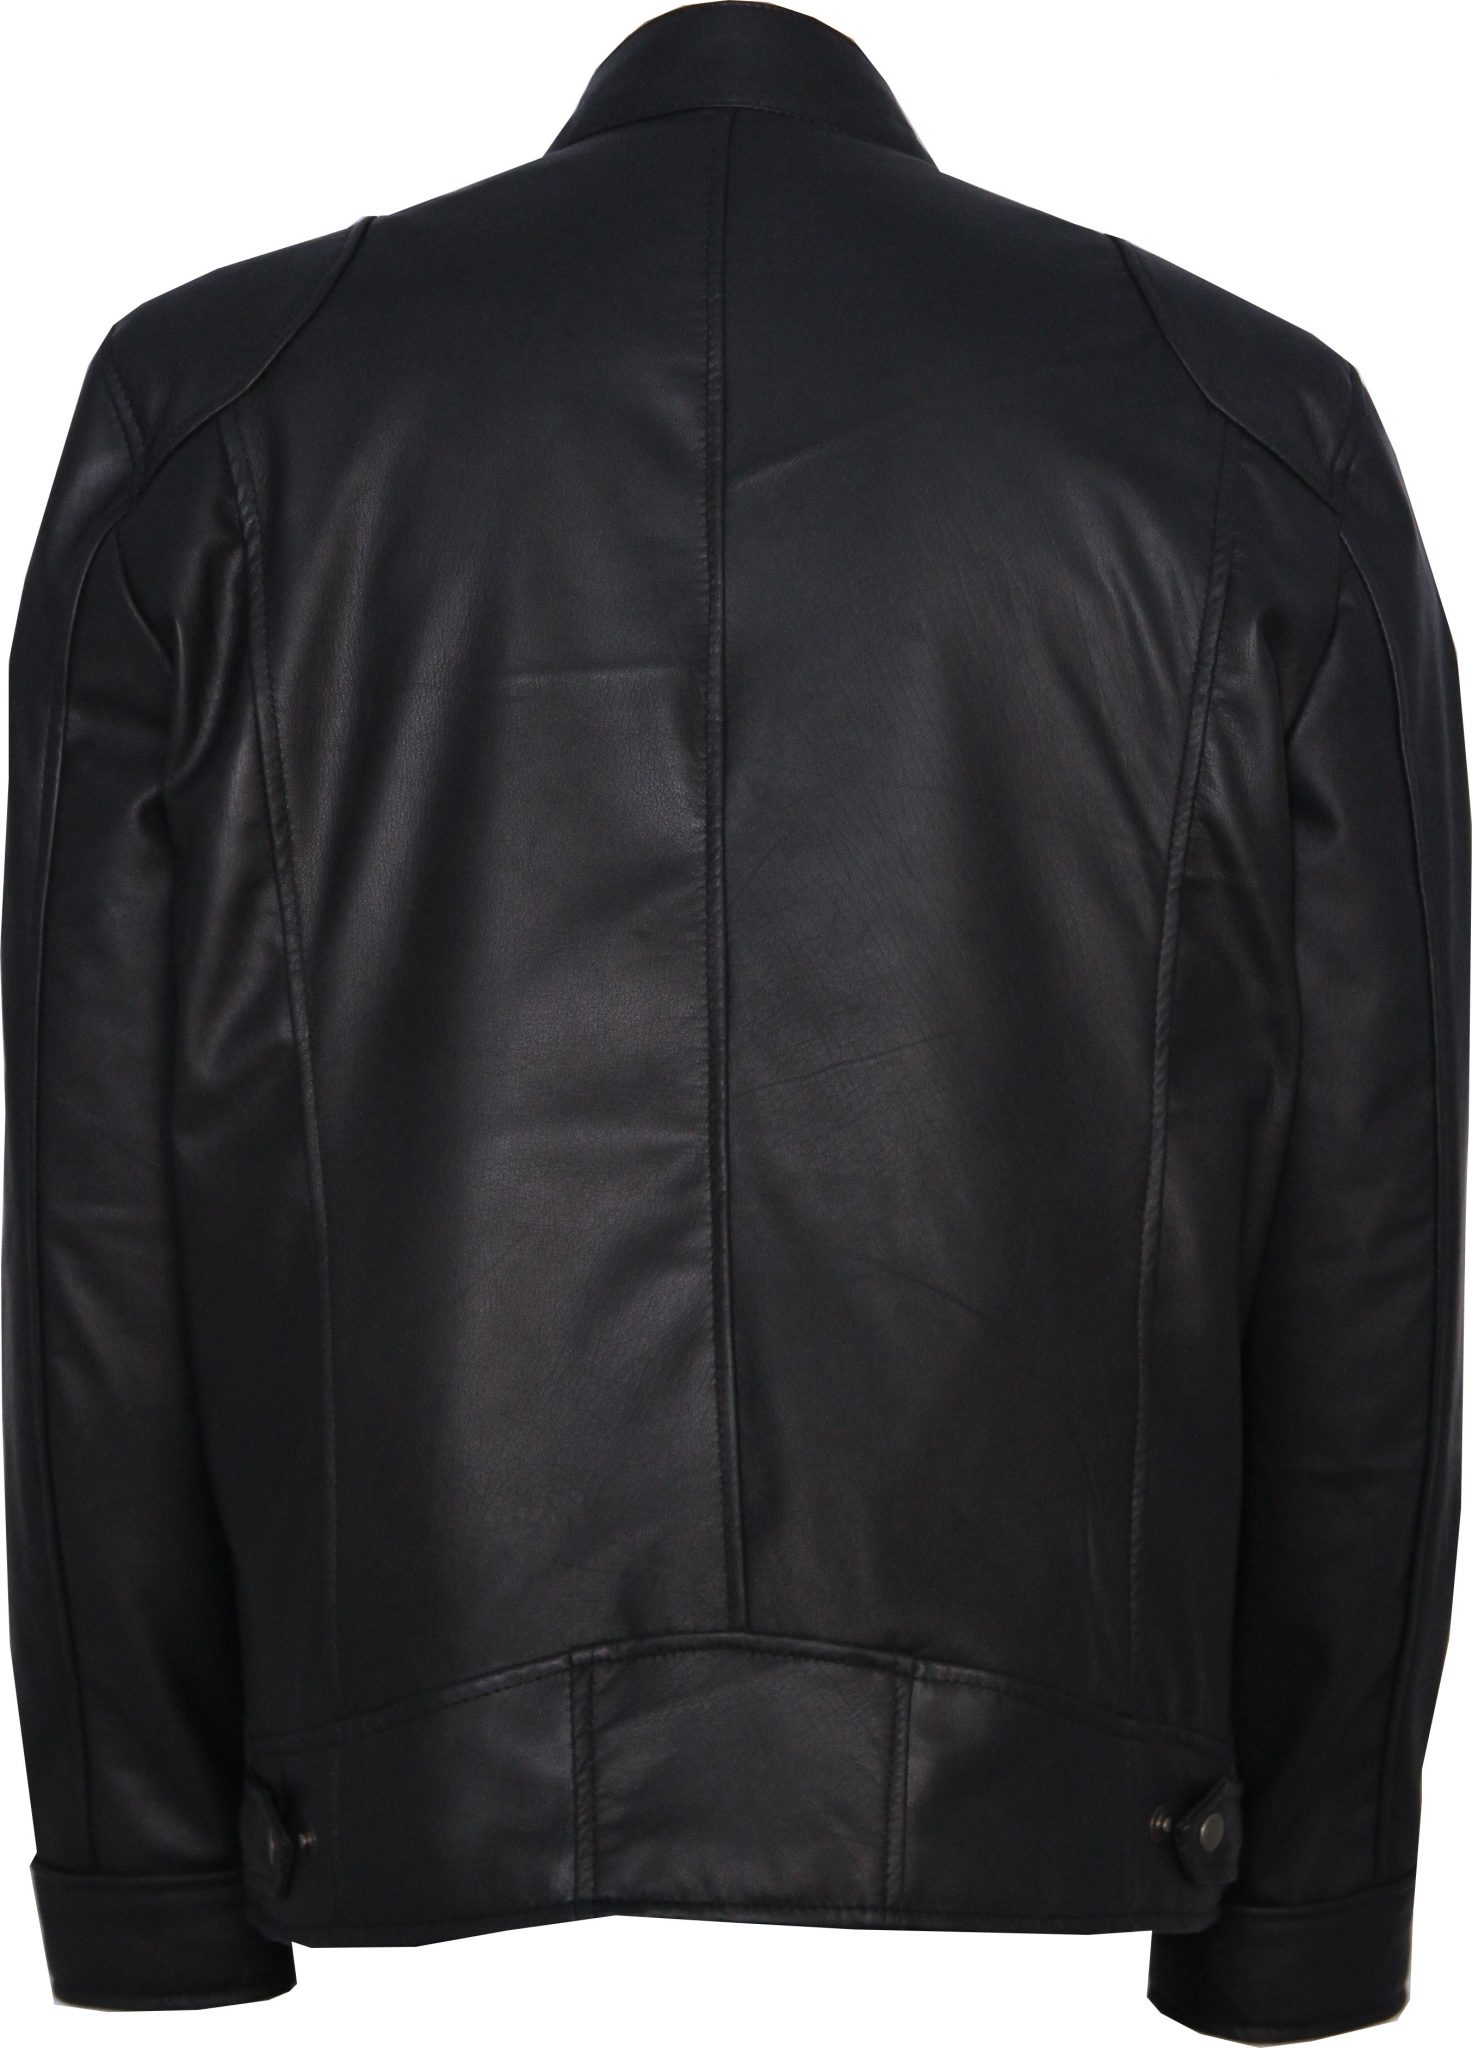 Sword Leather Jacket | Mens Black Motorcycle Jacket - IBI Leather